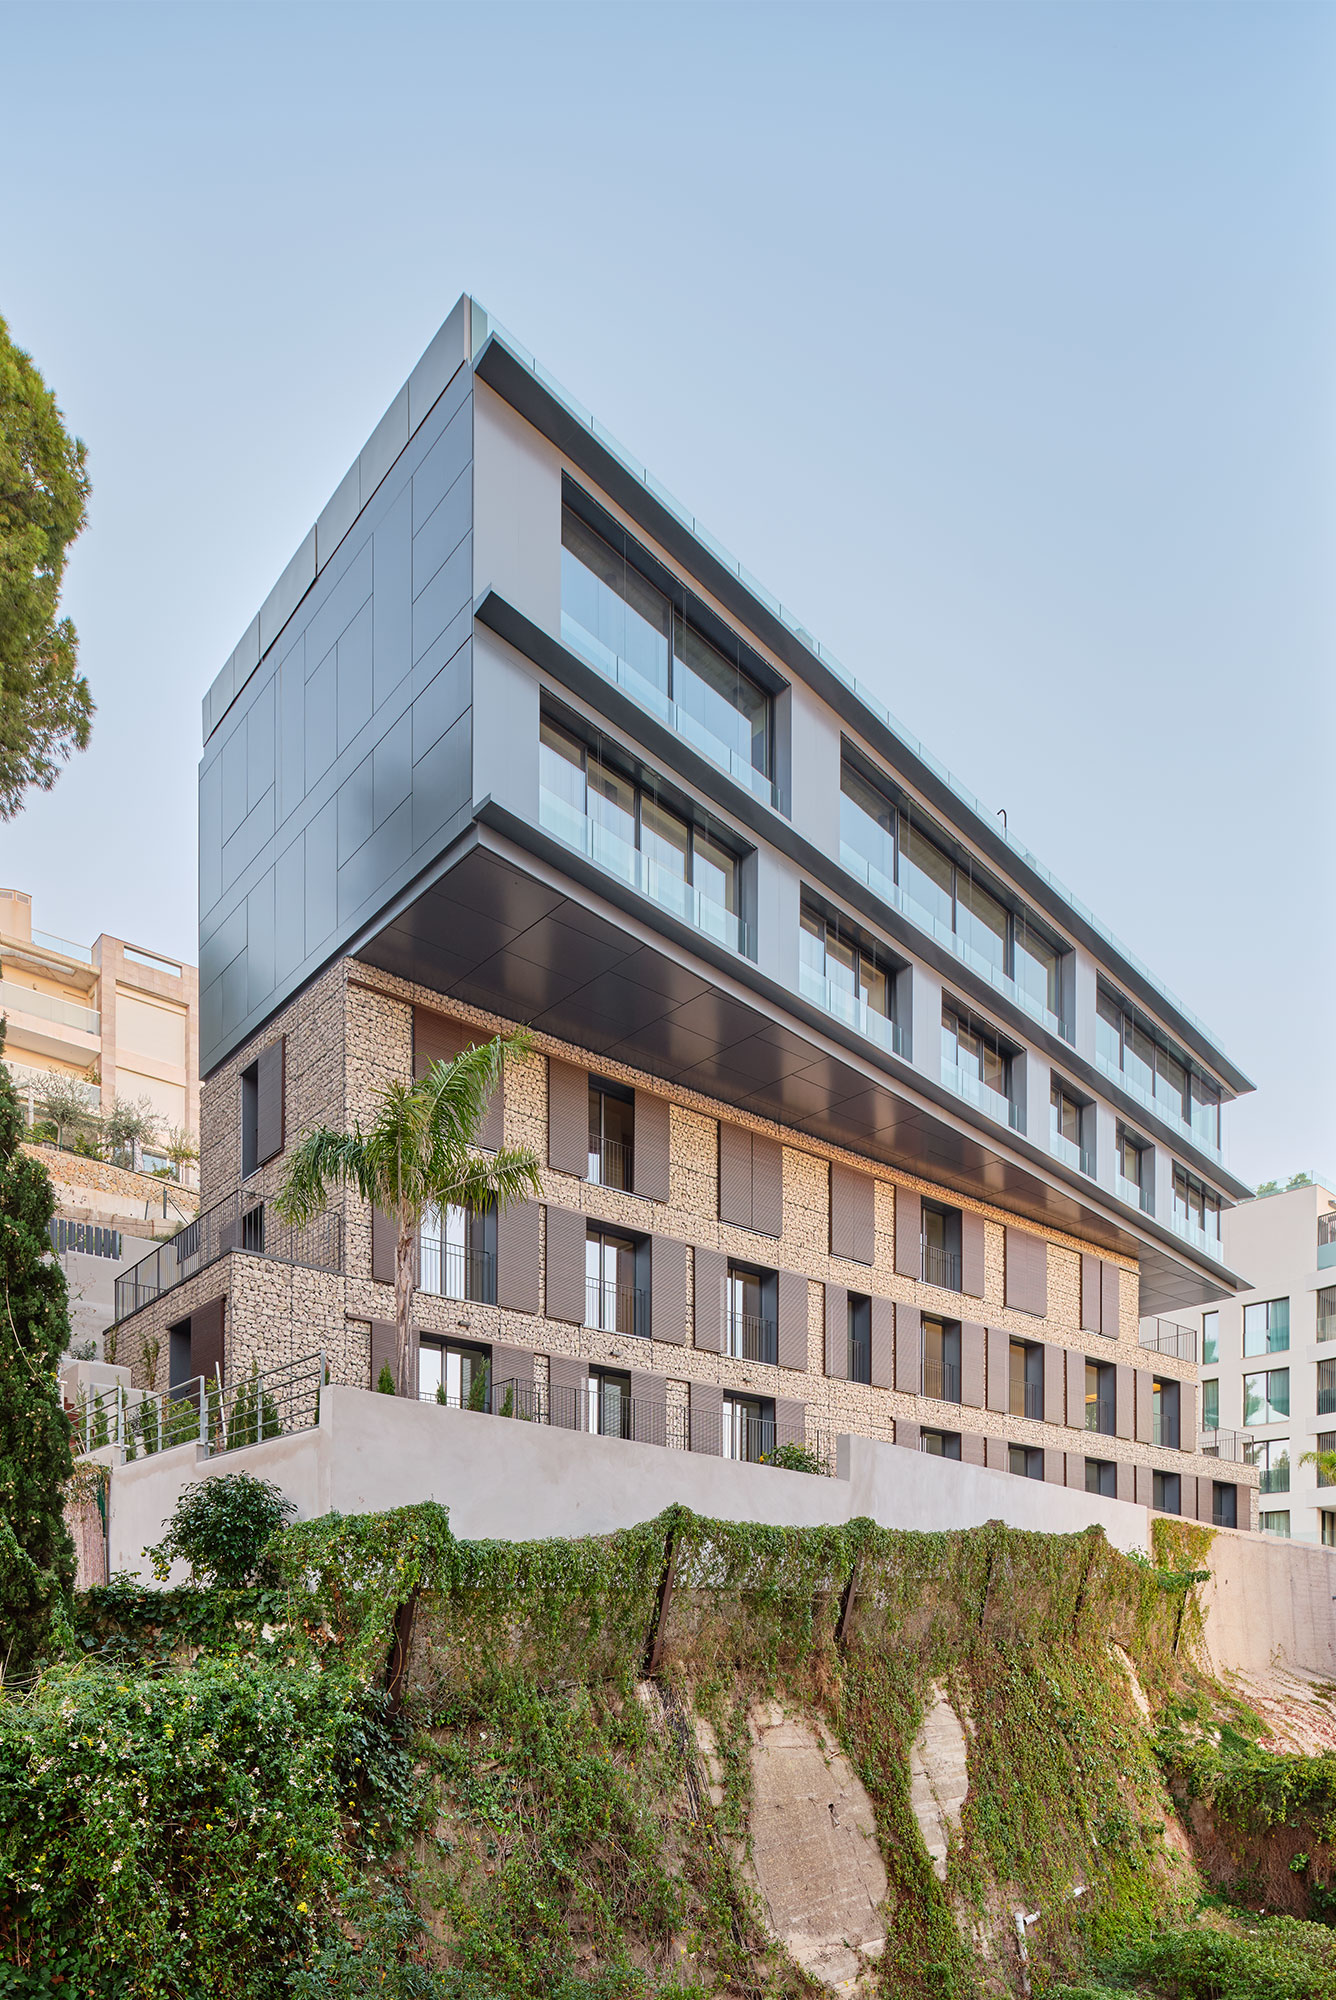 mra apartments mirador gras reynes arquitectos